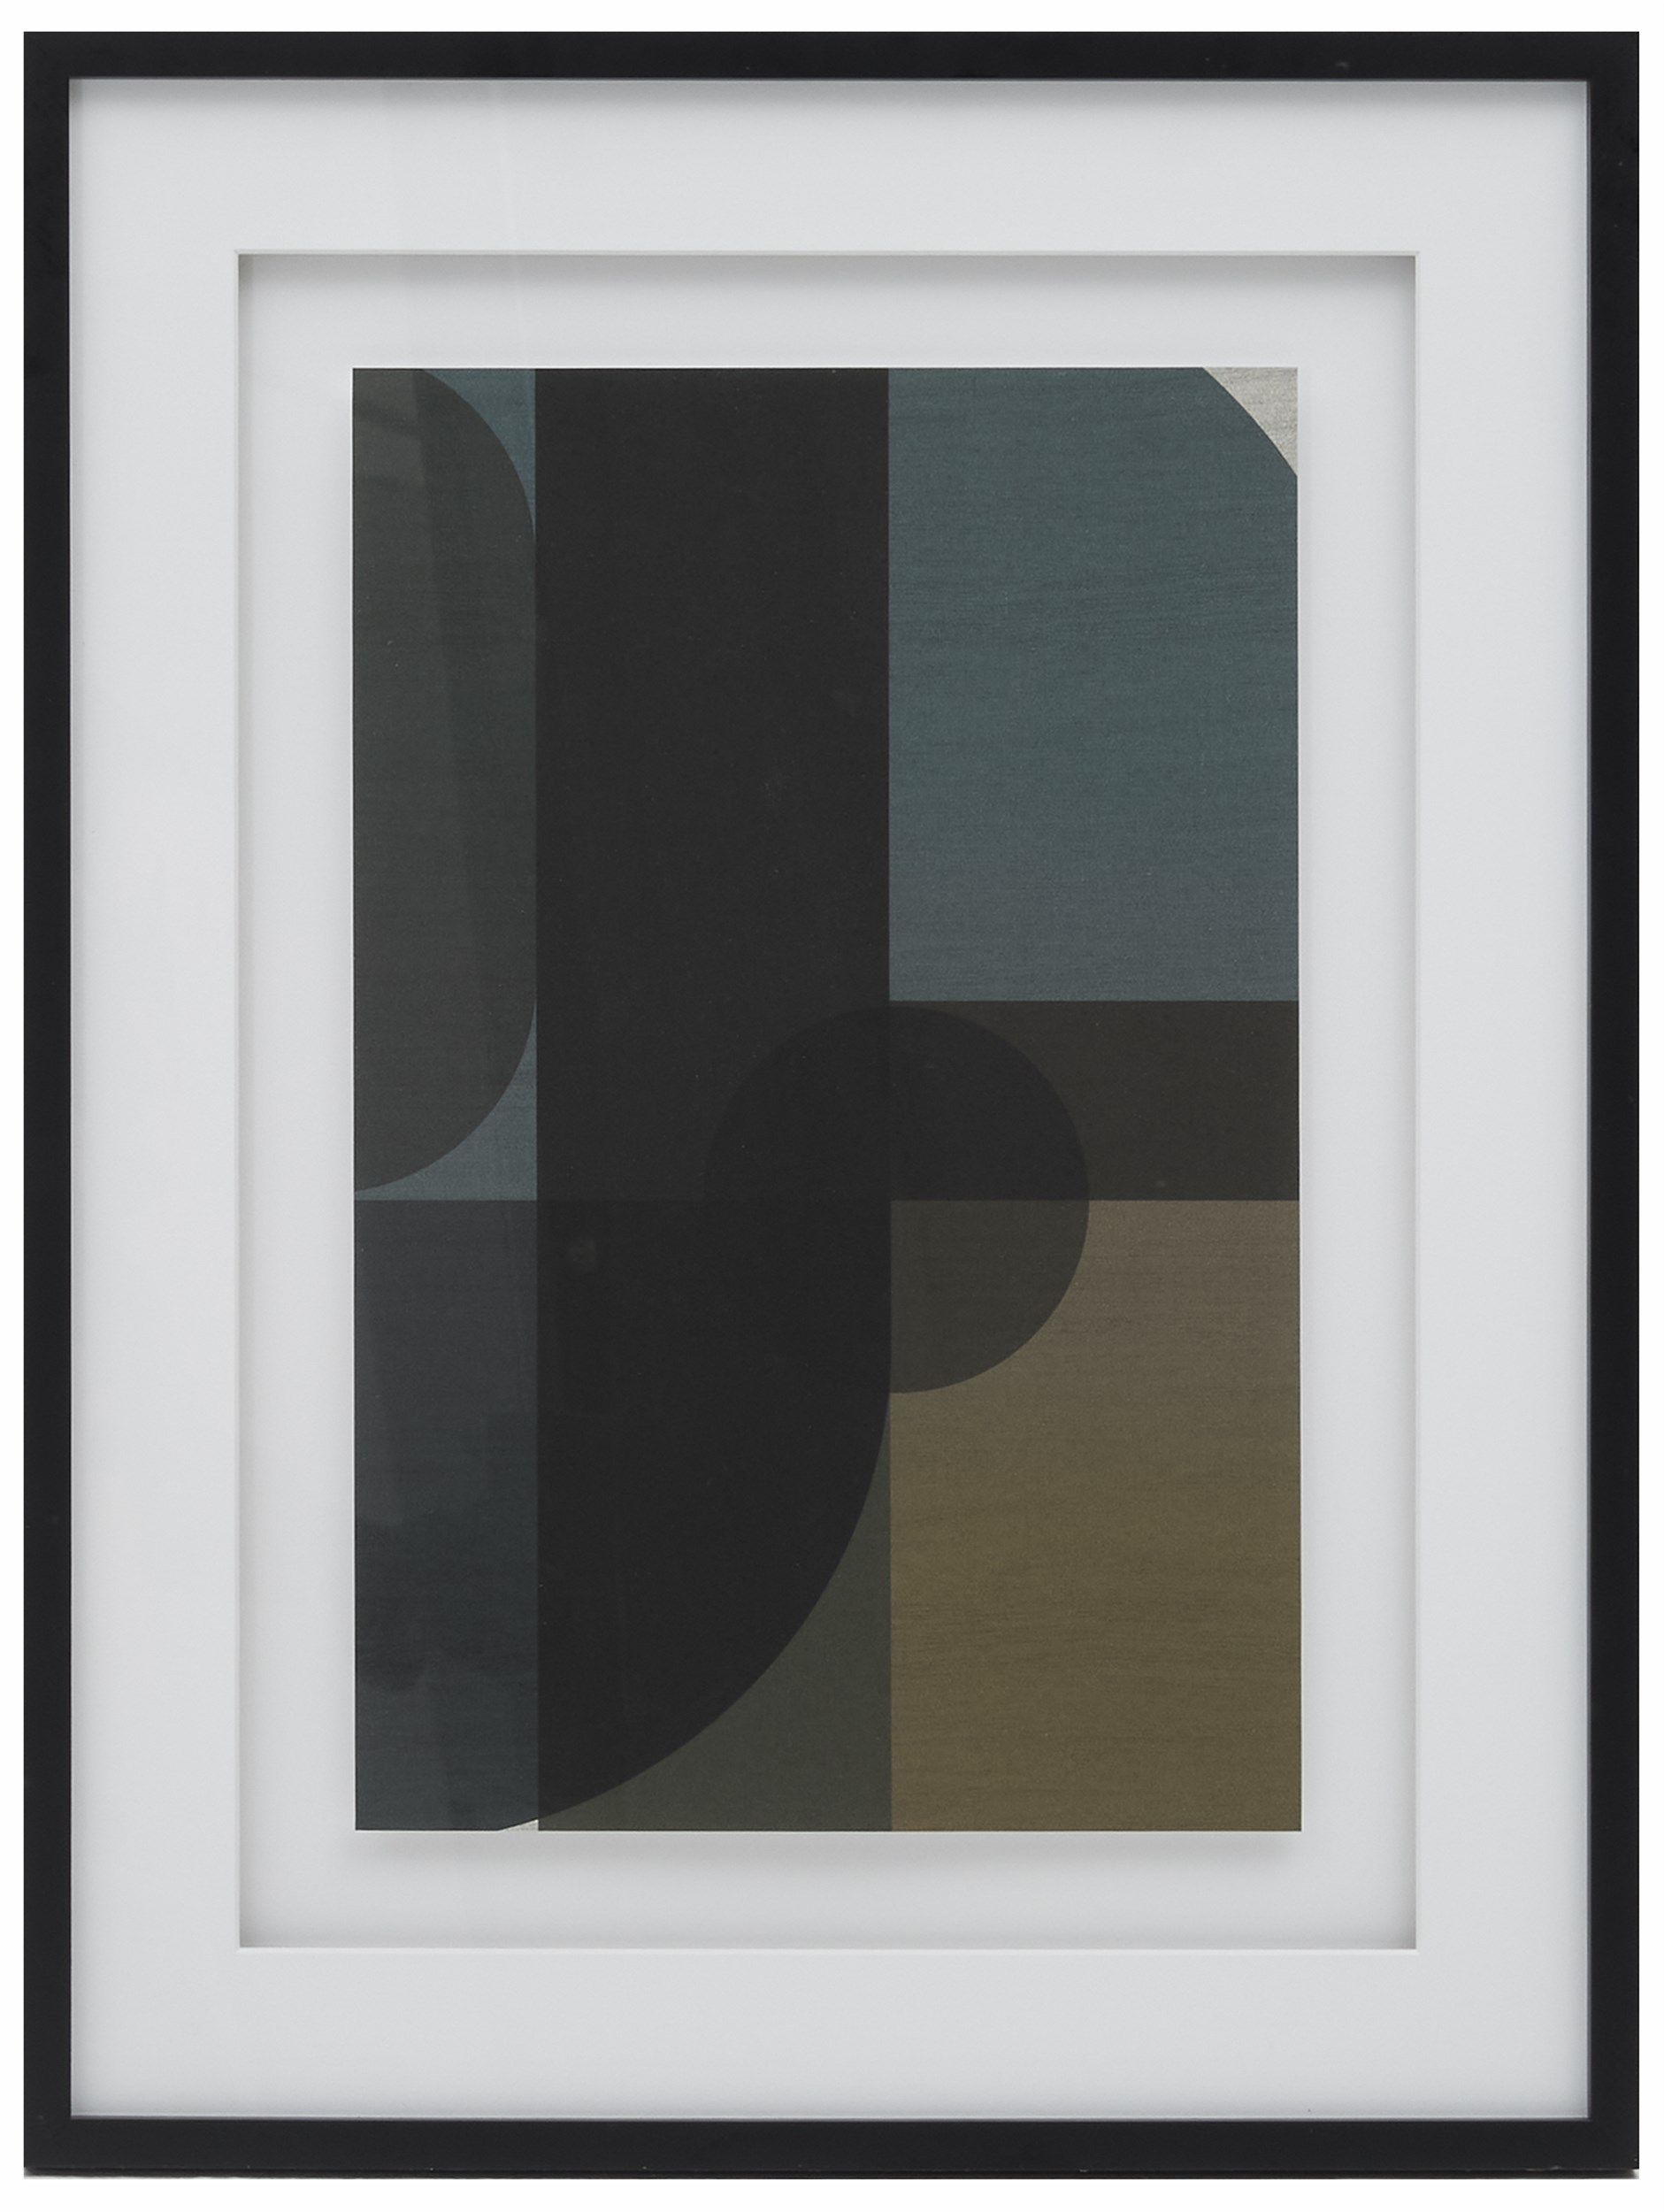 Pillar affisch med ram, stor 60 x 80 x 3 cm - Grön/svart/brun och blå, Abstrakt stapelmotiv och med svart ram